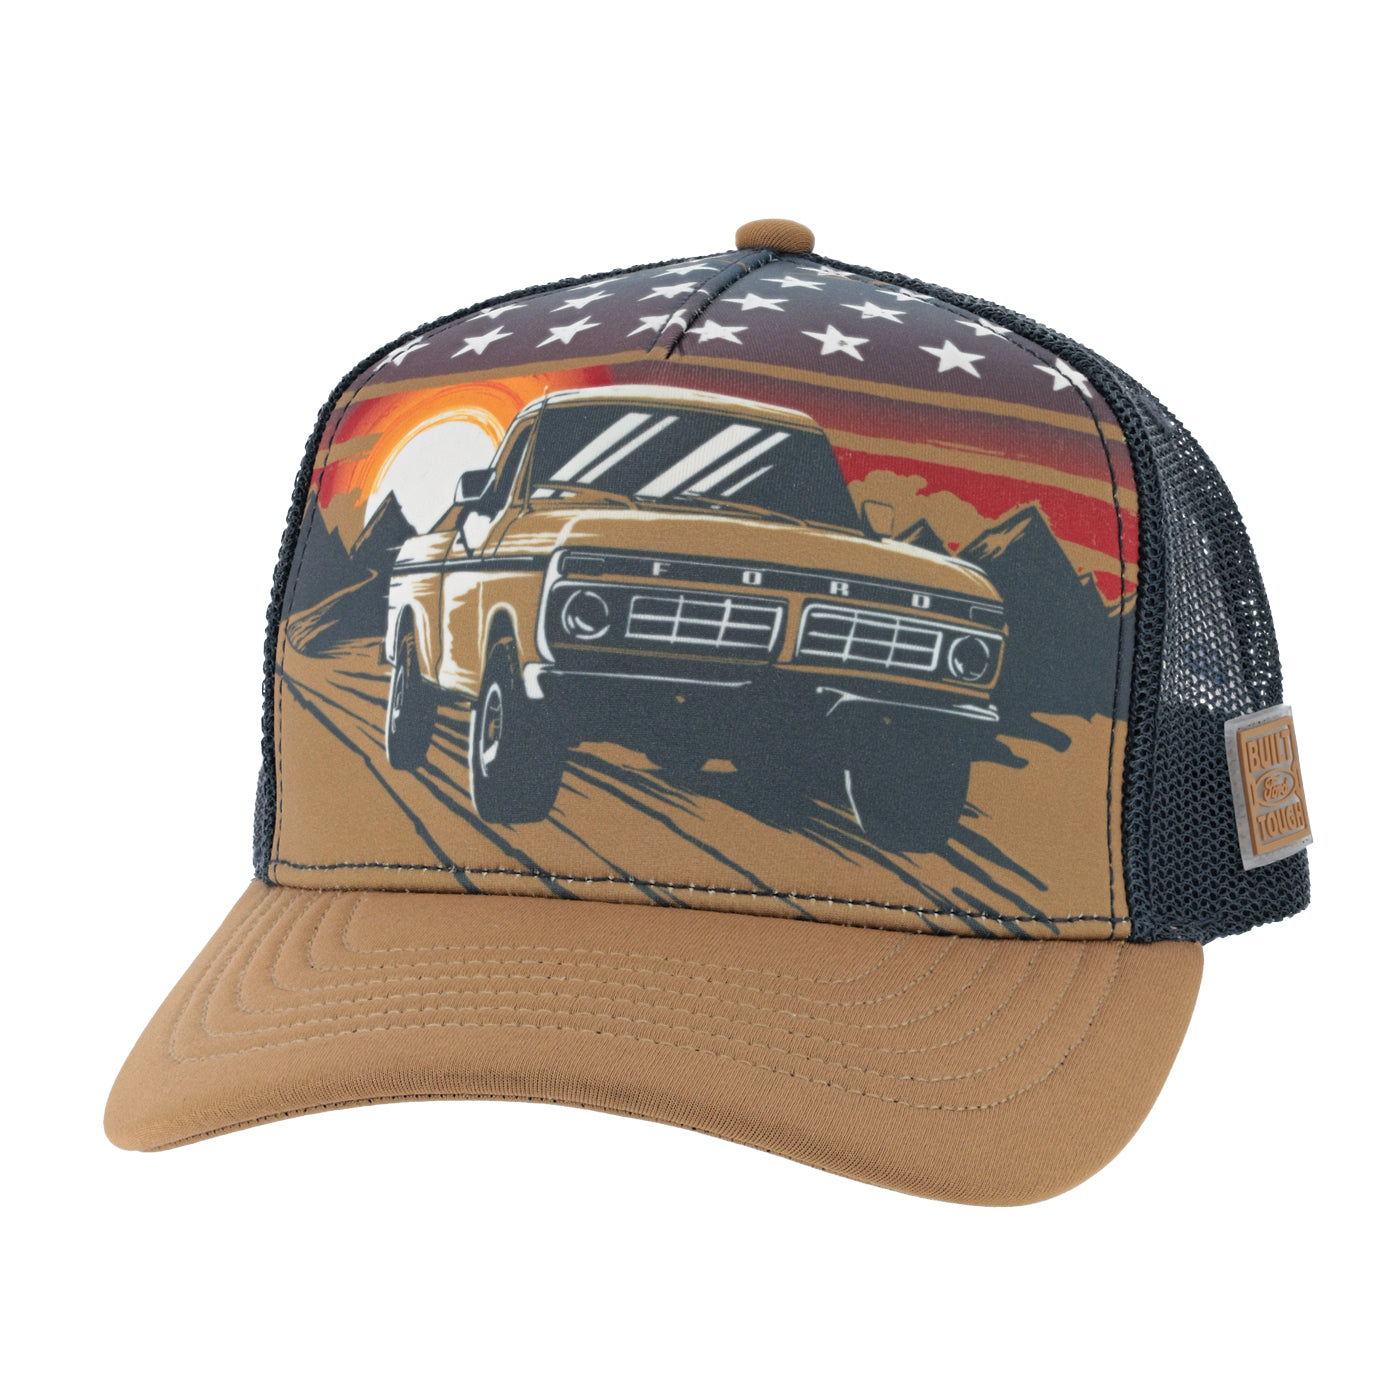 Retro Ranger Trucker Hat  Hats for men, Vintage trucker hats, Trucker hat